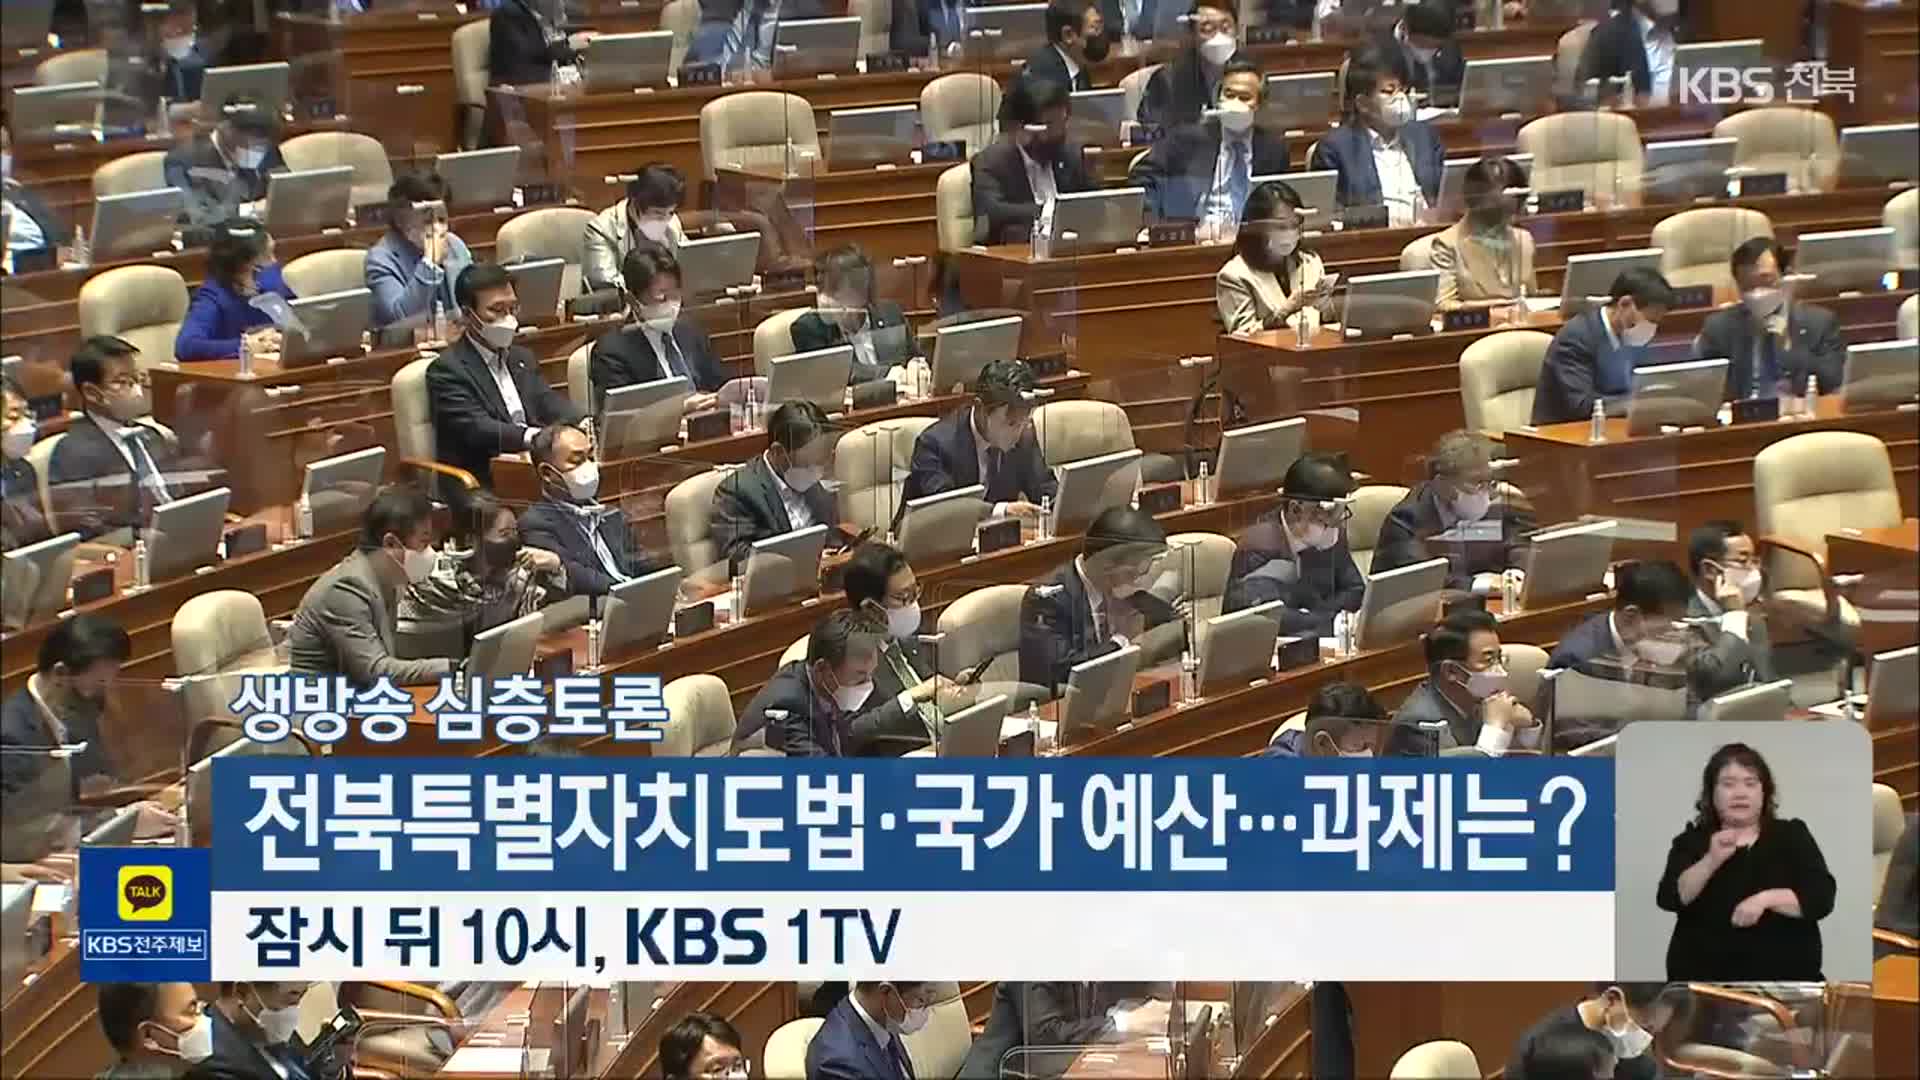 [생방송 심층토론] ‘전북특별자치도법·국가 예산…과제는?’ 잠시 뒤 10시 방송